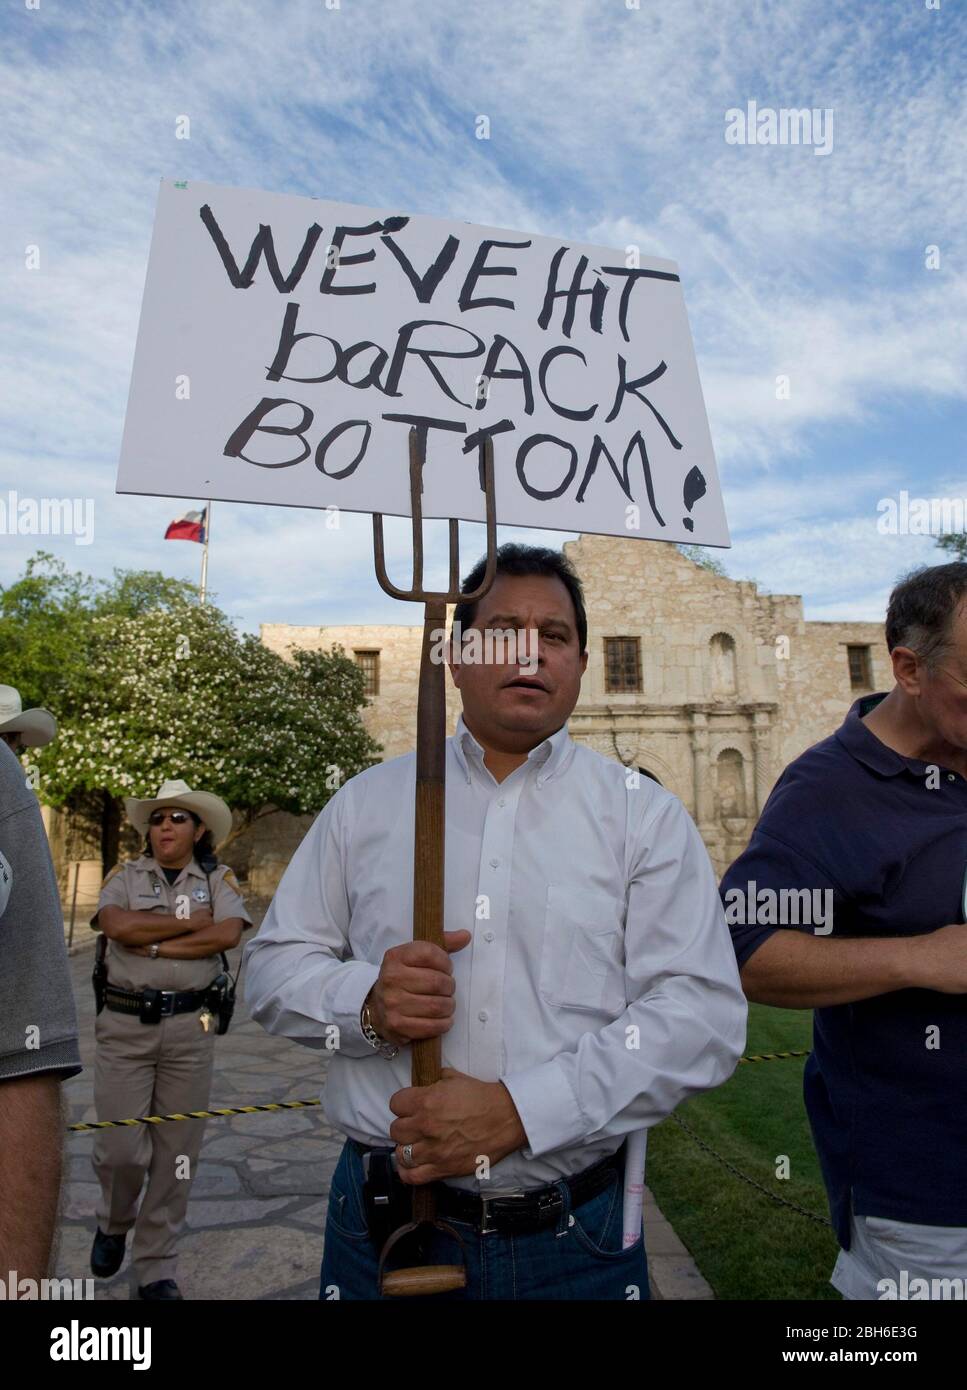 San Antonio, Texas 15 avril 2009: Quelques-uns des milliers de Texans qui se sont réunis en face de l'Alamo dans le centre de San Antonio pour un "Tea Party" protestant contre les renflouements fédéraux et les politiques économiques et d'immigration du président Obama. ©Bob Daemmrich Banque D'Images